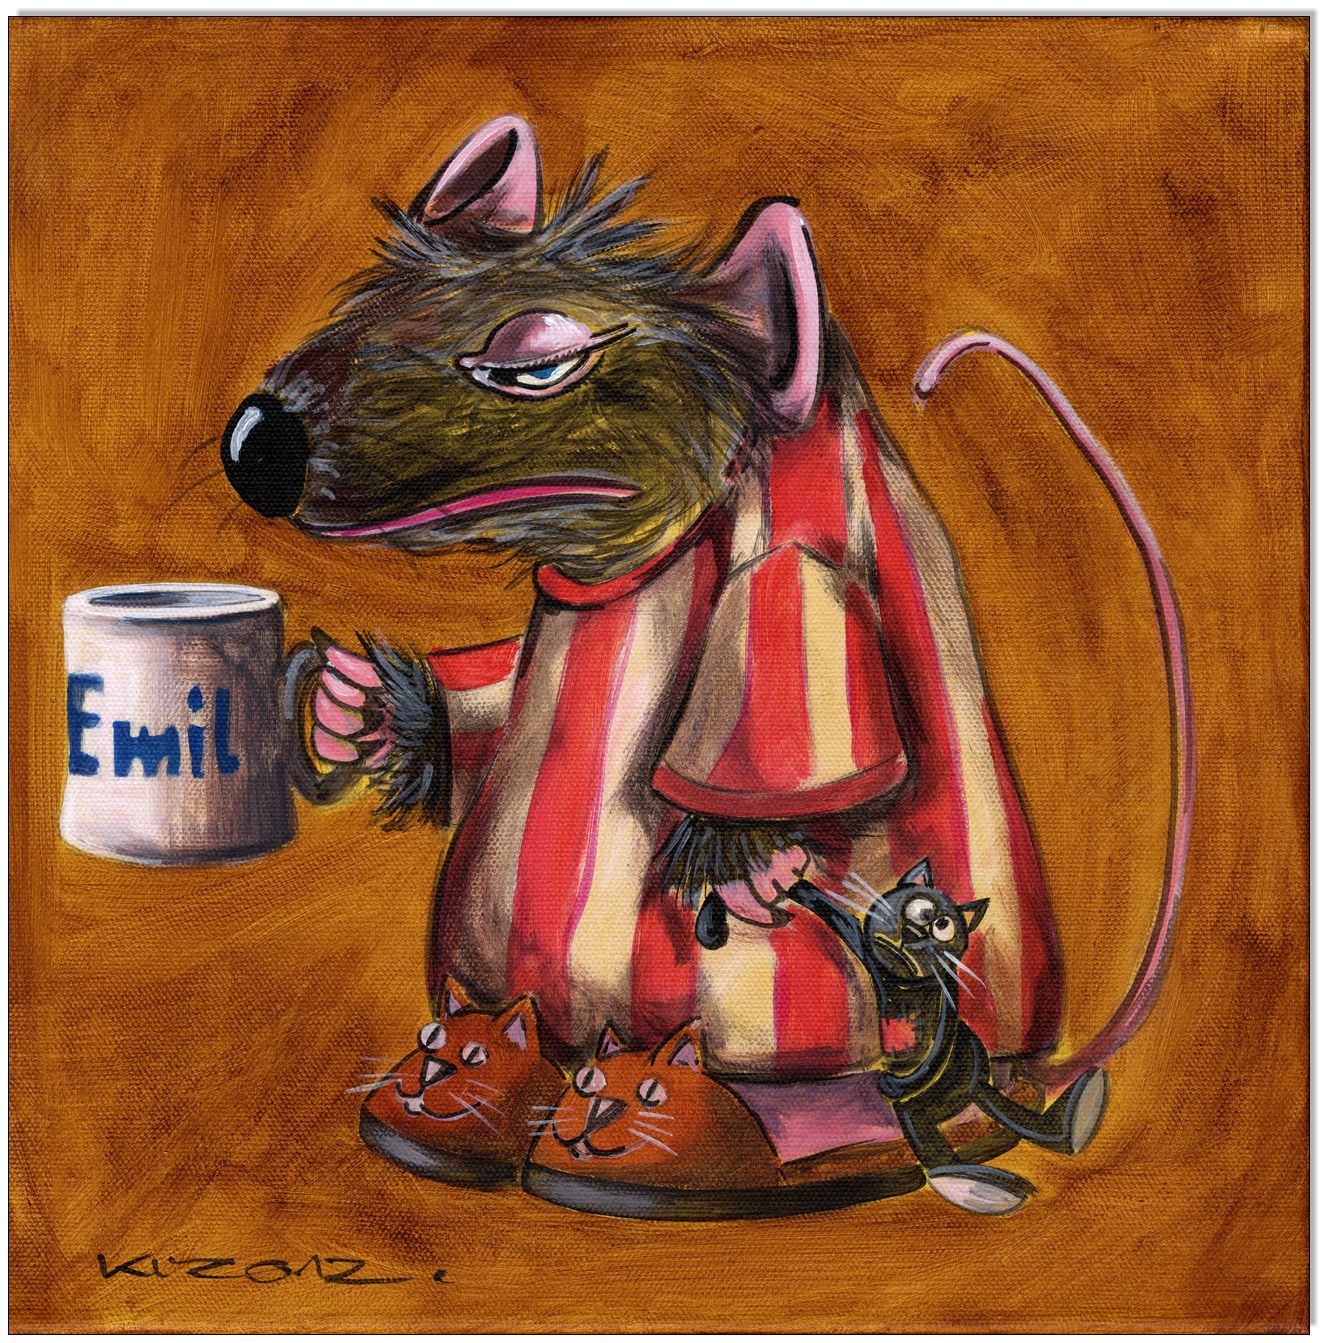 Die Ratte Emil V: Good morning Emil - 30 x 30 cm